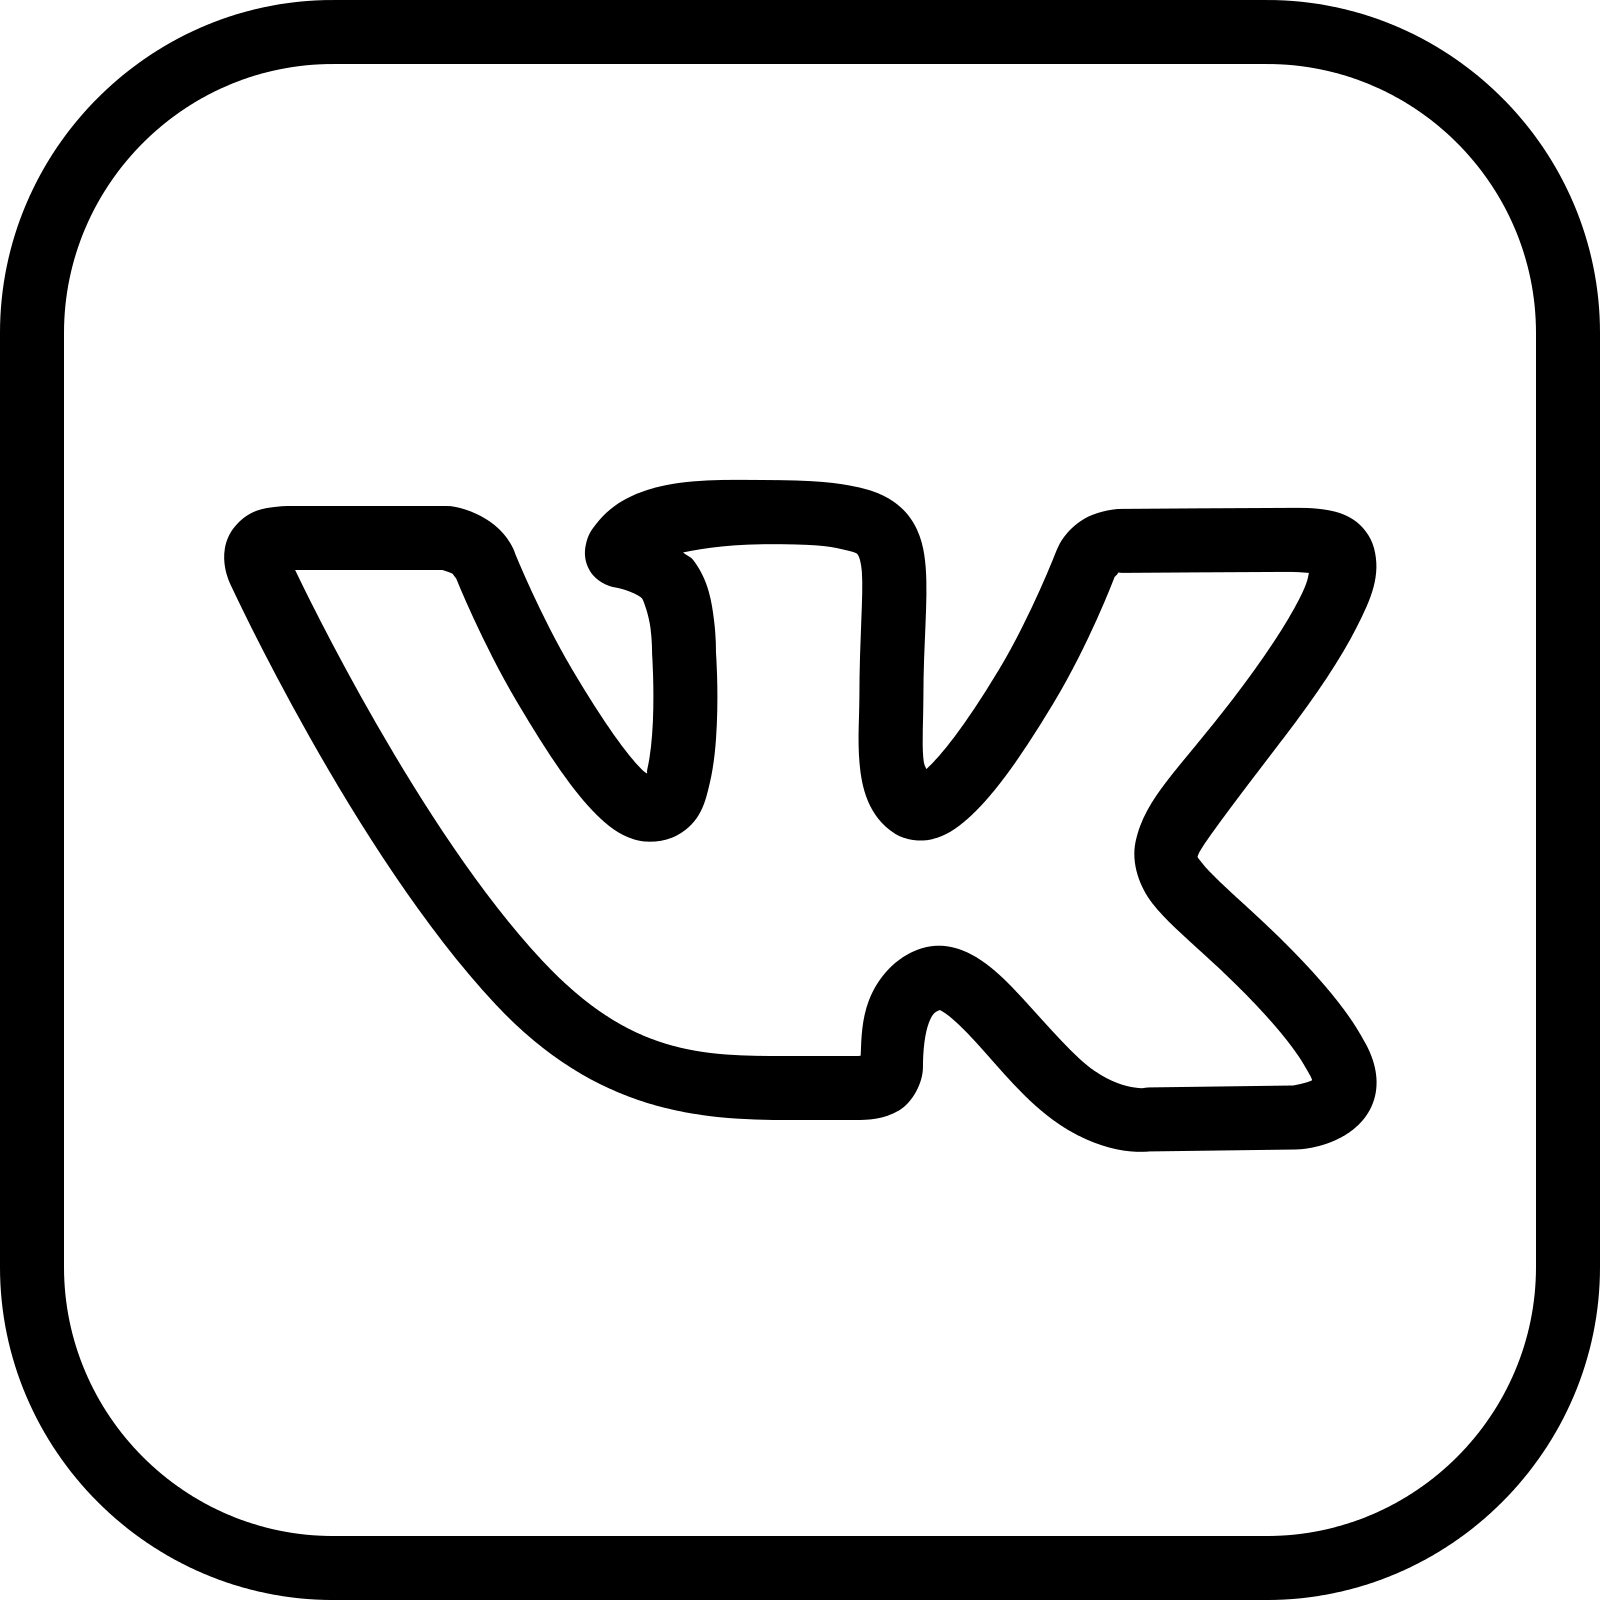 Значок ВК. Значок Вики. OBK логотип. Значок ВК белый. Tanukishop com